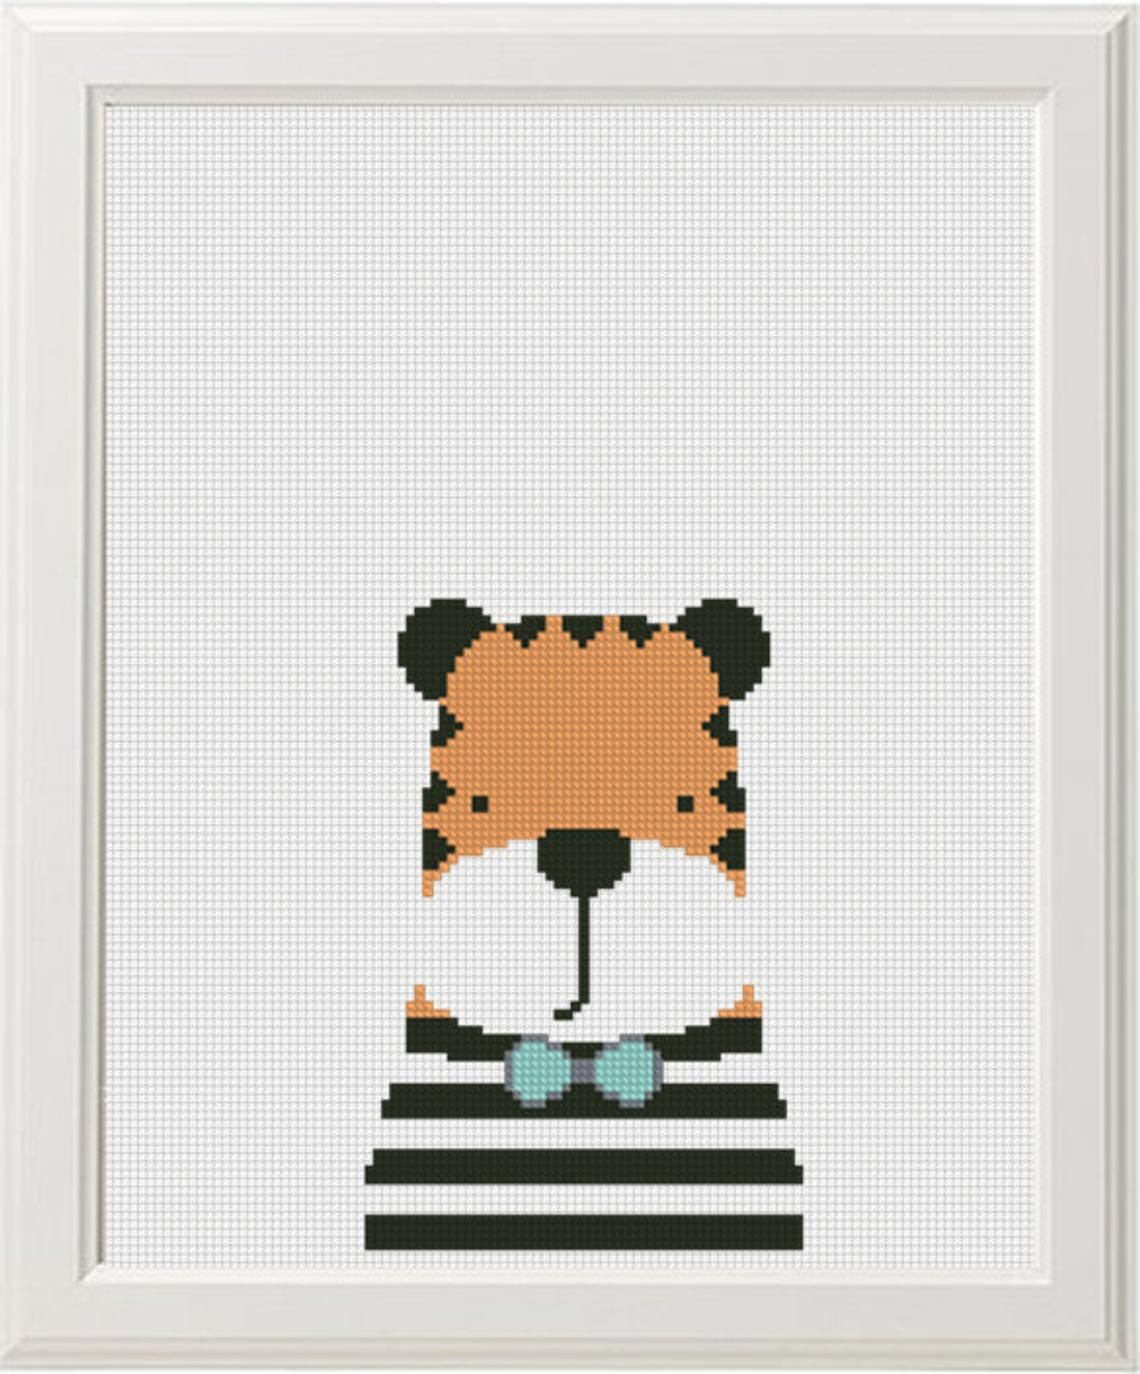 Funny Embroidery Patterns 86985916 Jungle Animals Cross Stitch Pattern Pdf Ba Cross Stitch